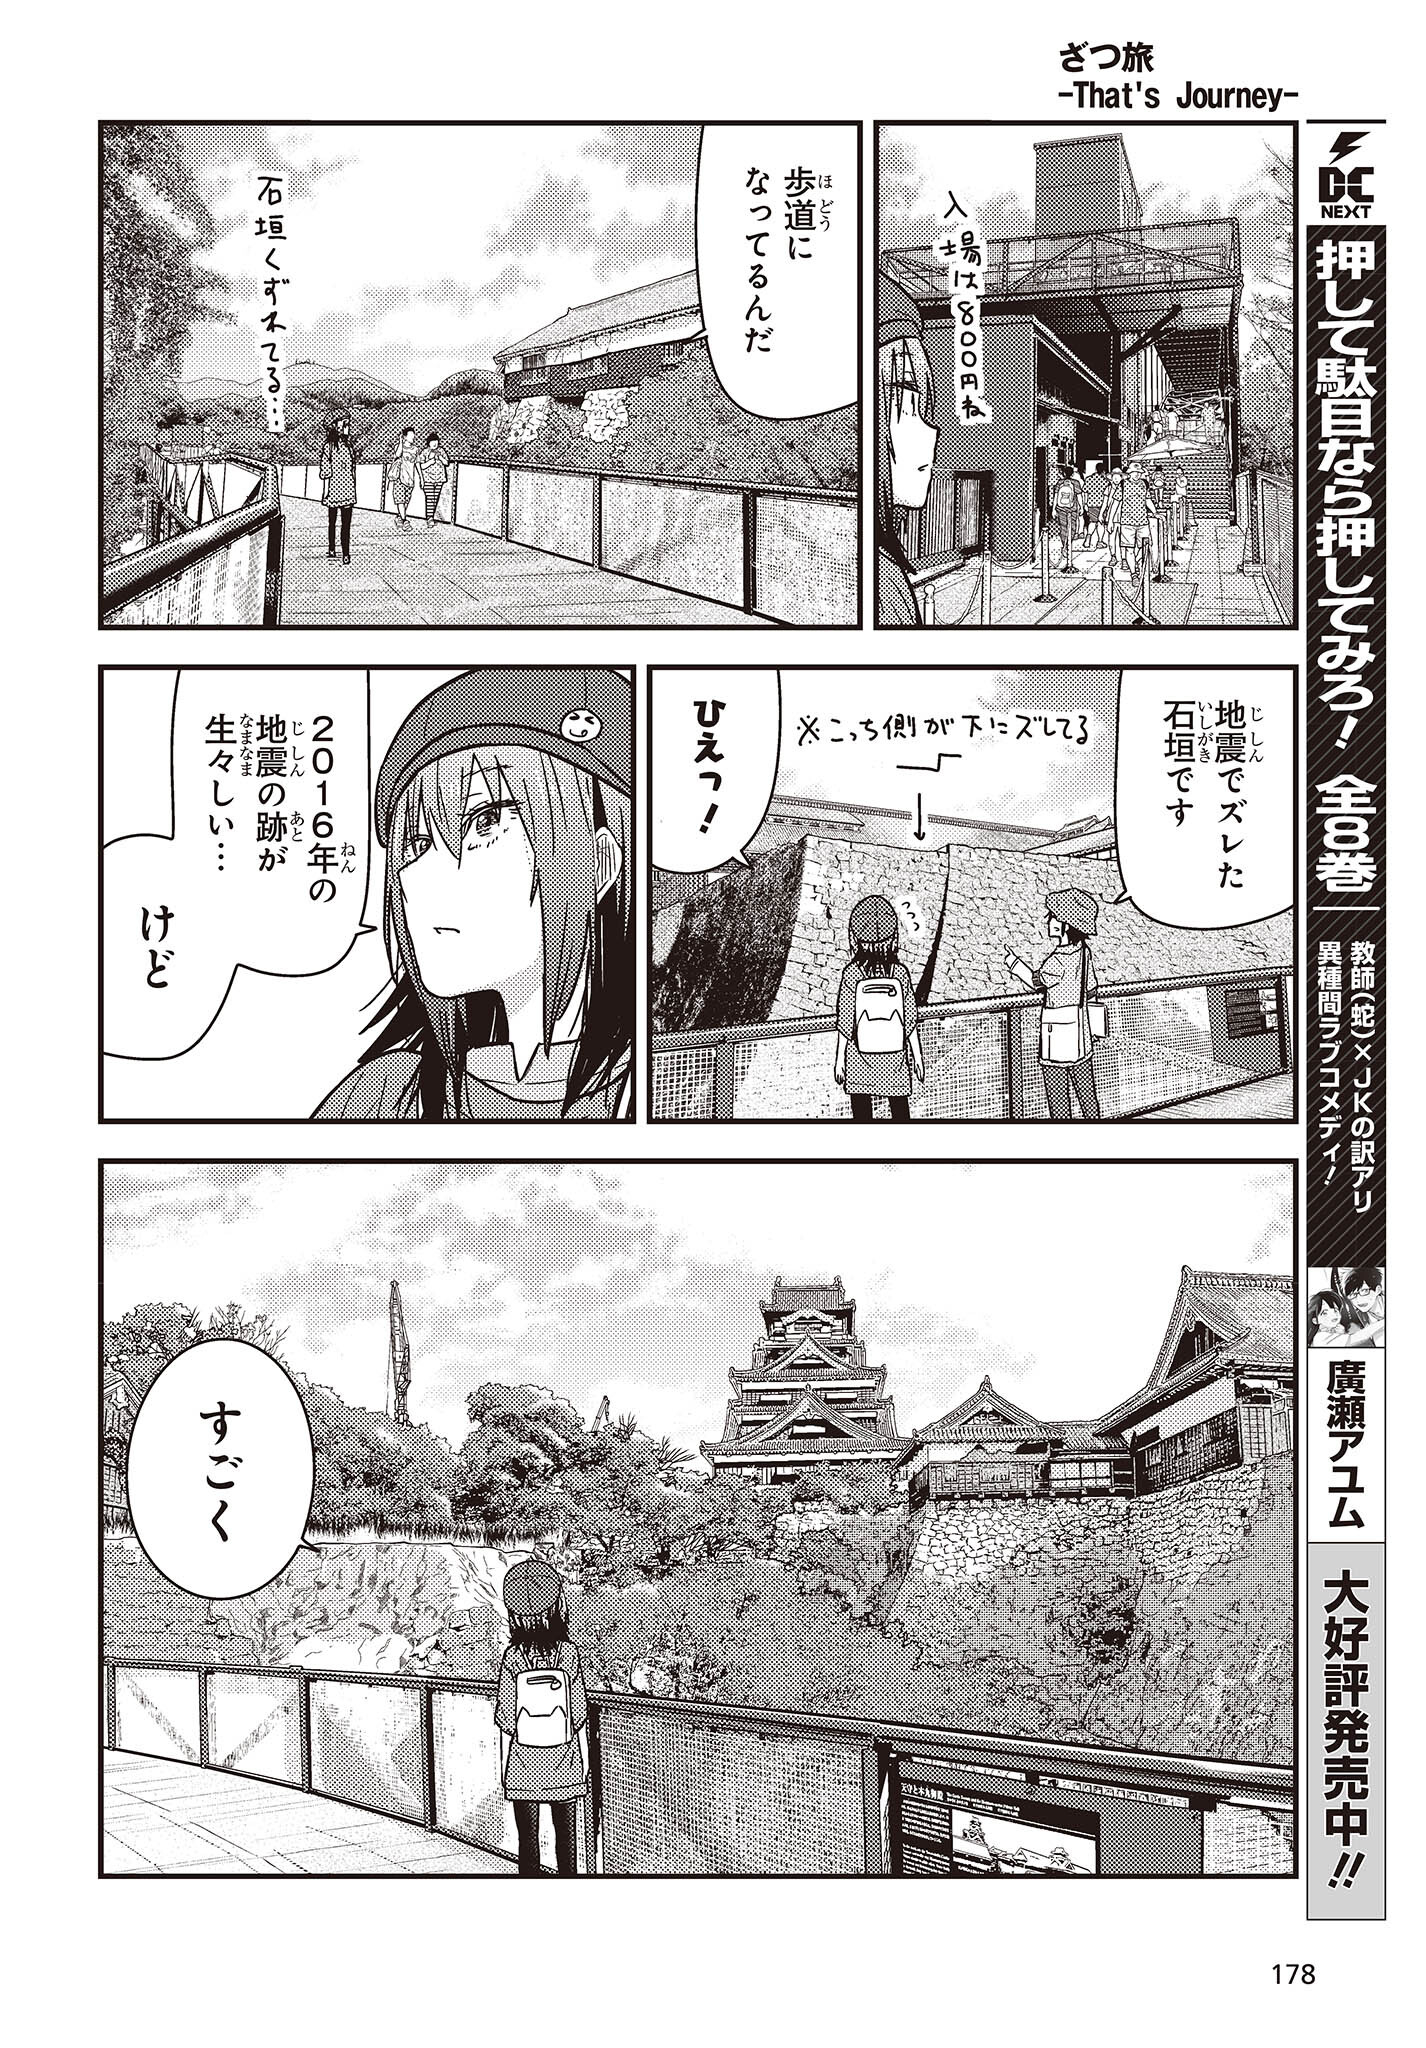 ざつ旅-That’s Journey- 第34話 - Page 18